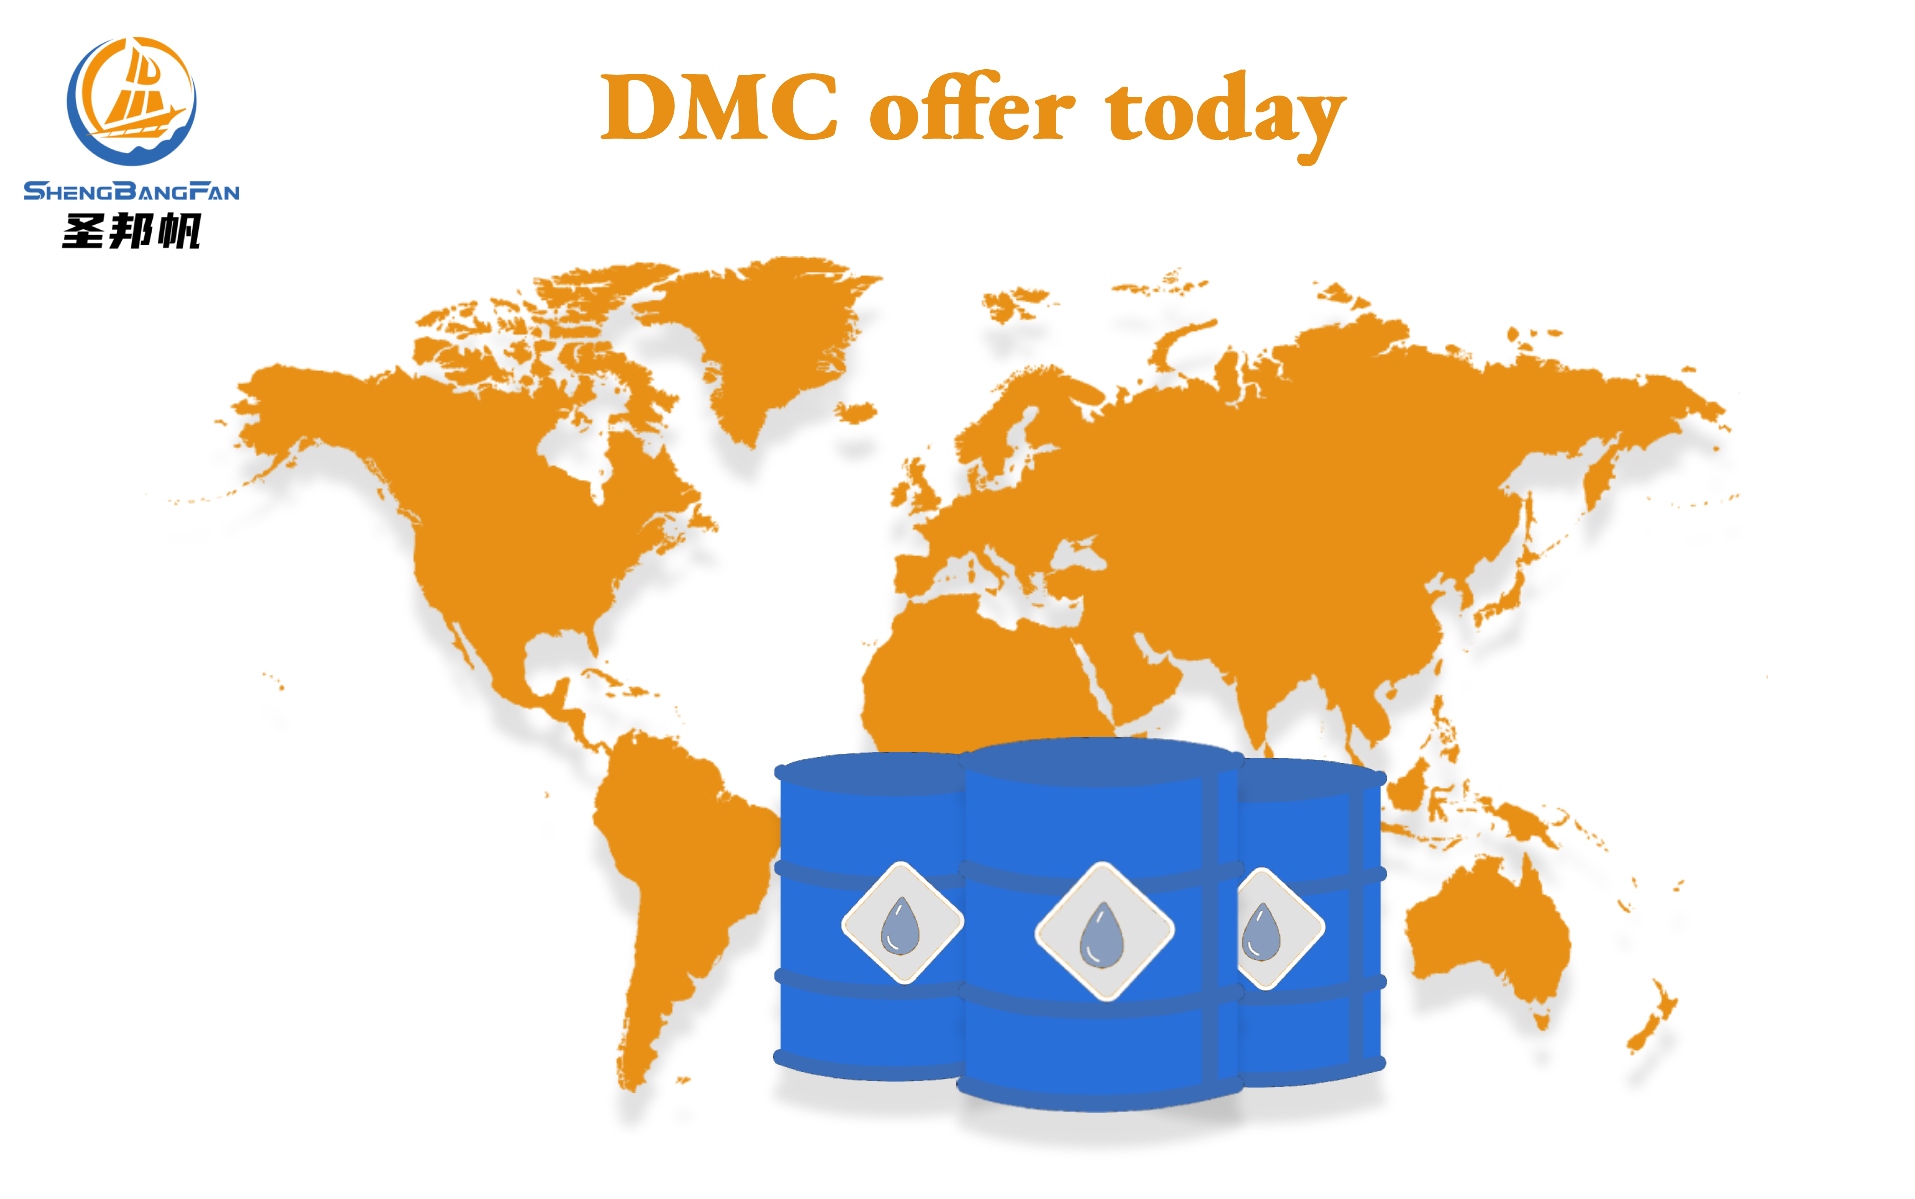 DMC offer this week